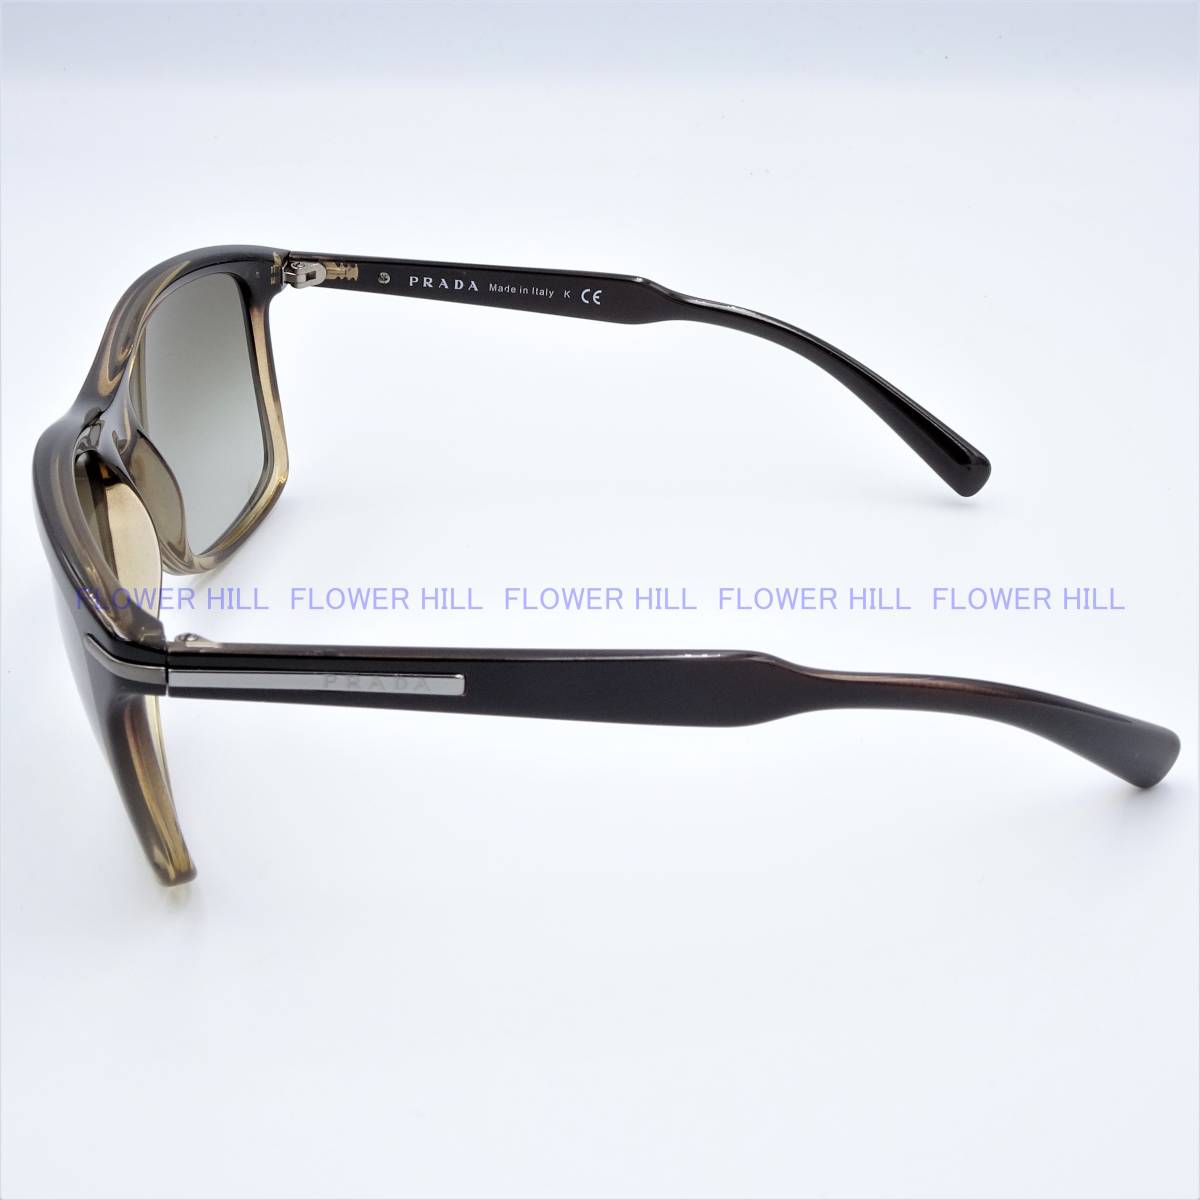 [ новый товар * бесплатная доставка ] Prada PRADA SPR10O ACL-4M1 солнцезащитные очки Brown градация Италия производства мужской женский 